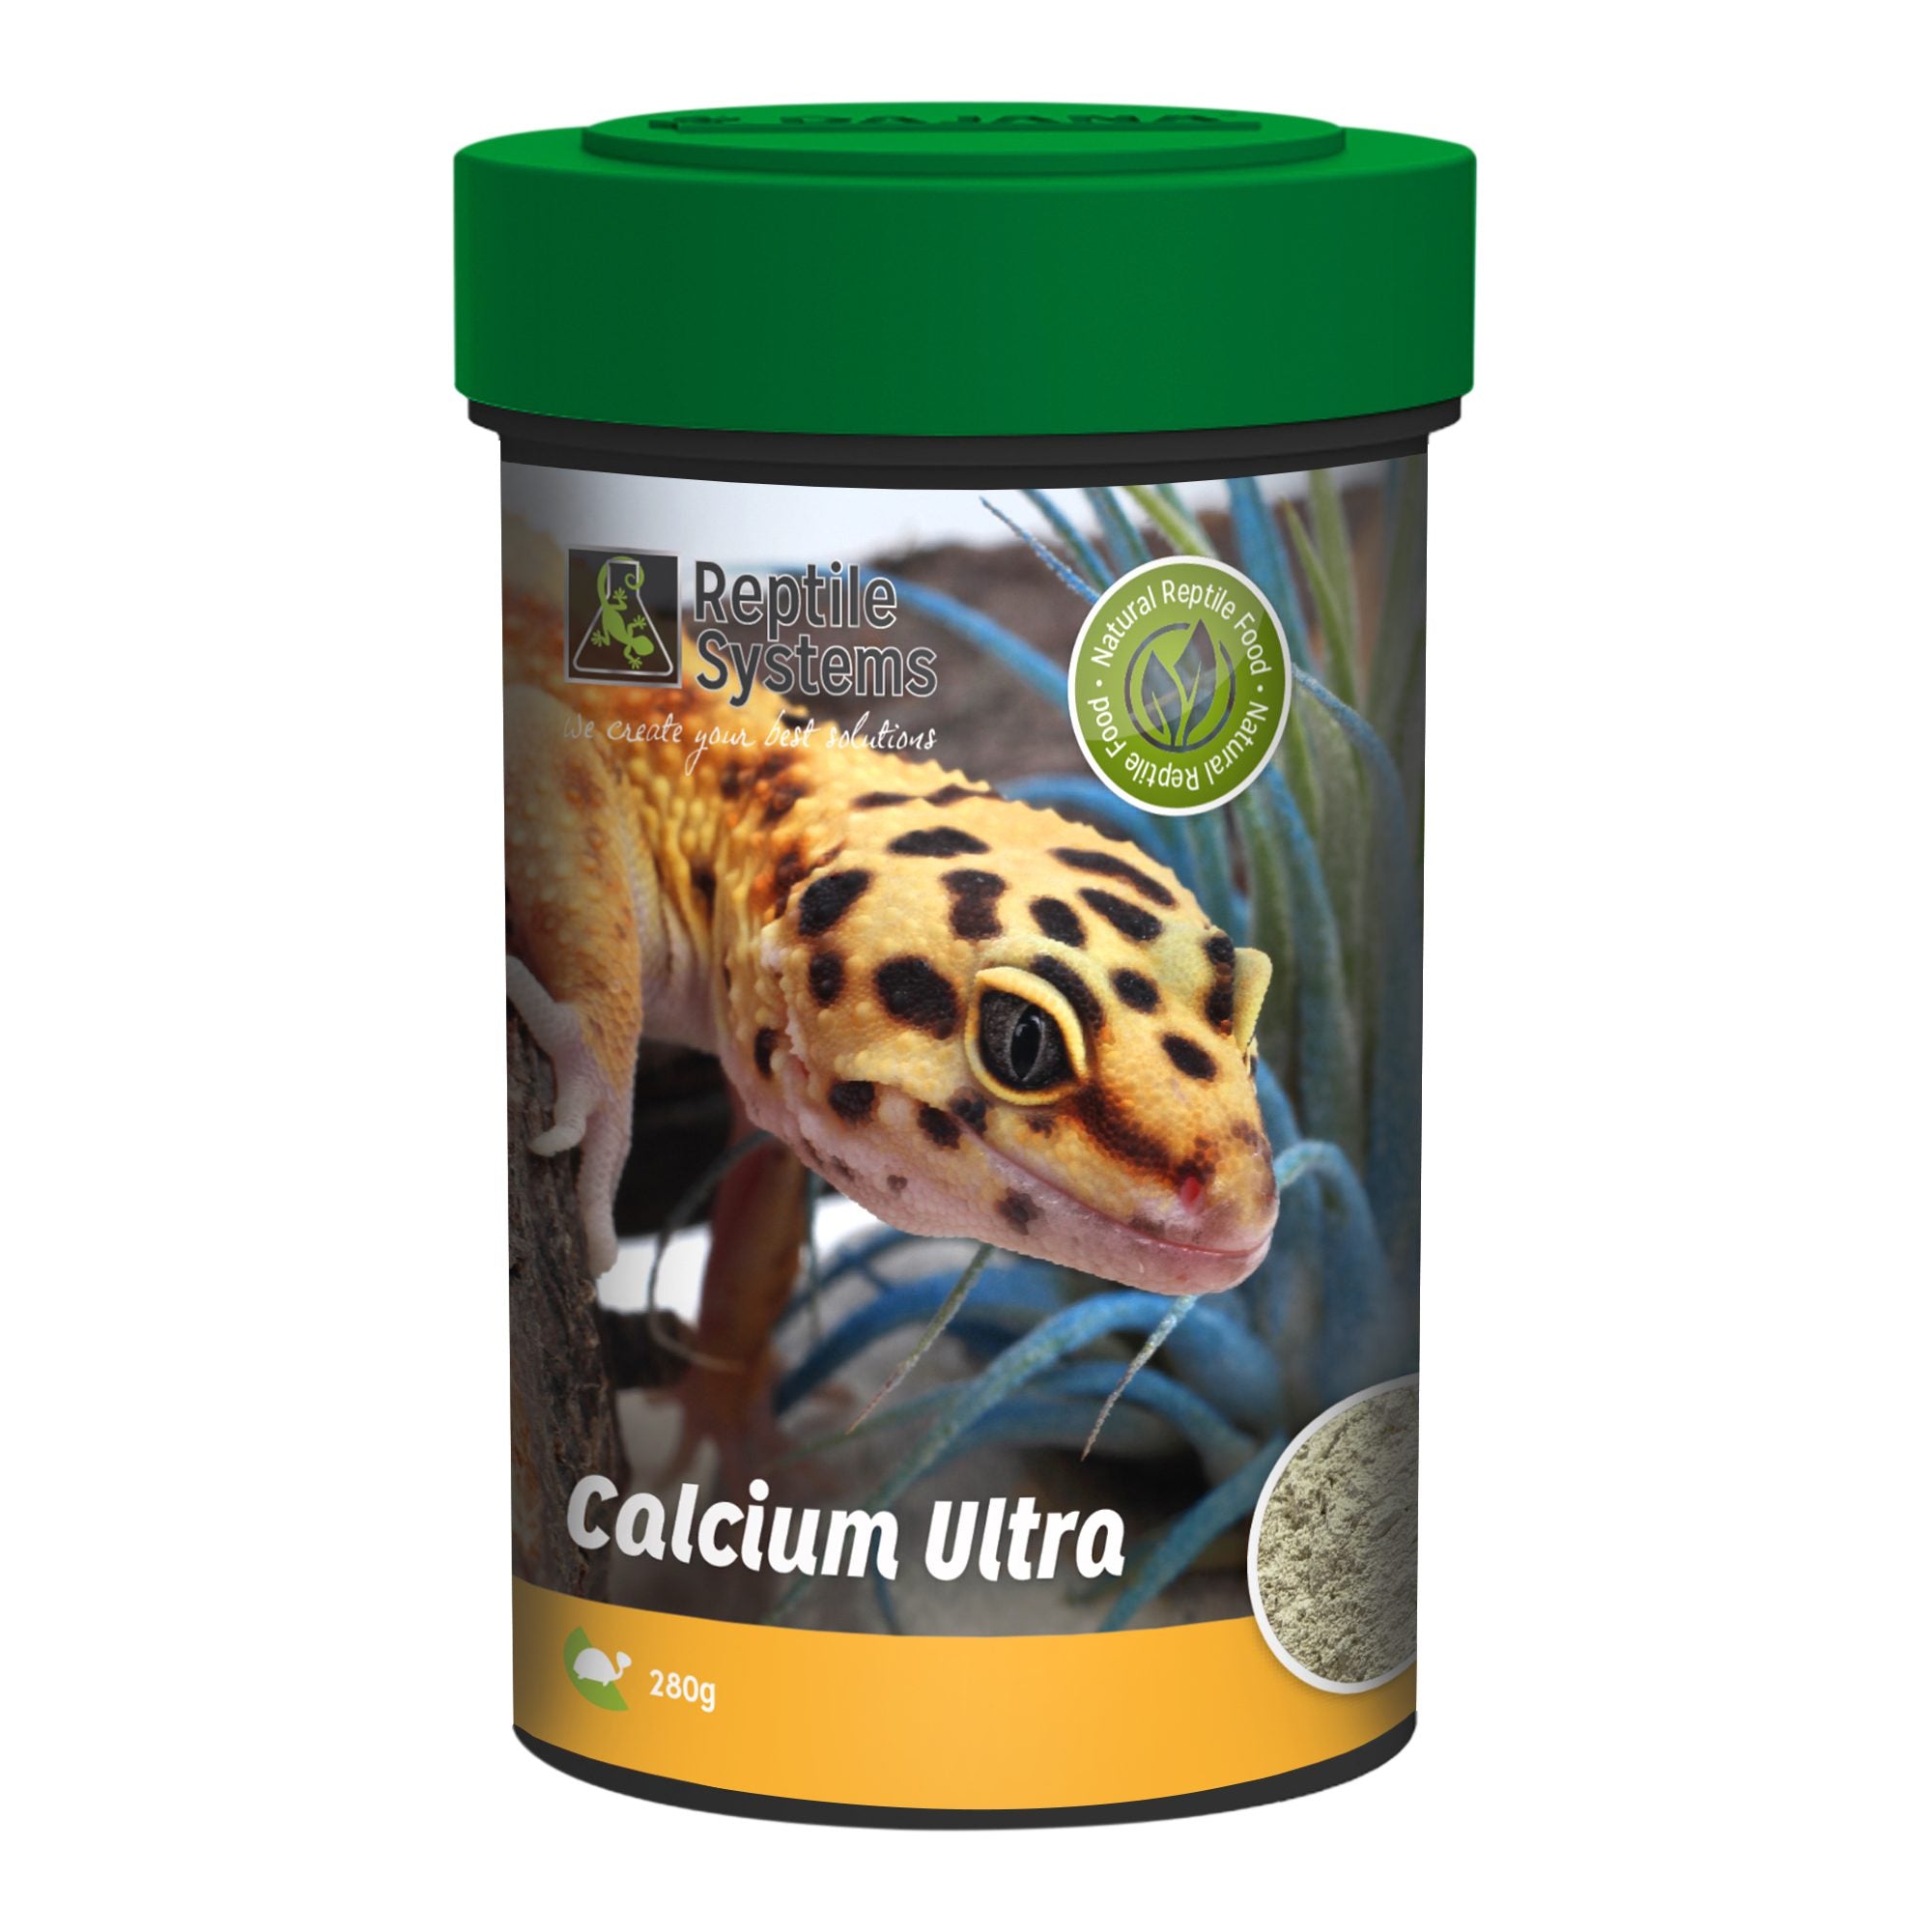 Calcium Ultra, 280g